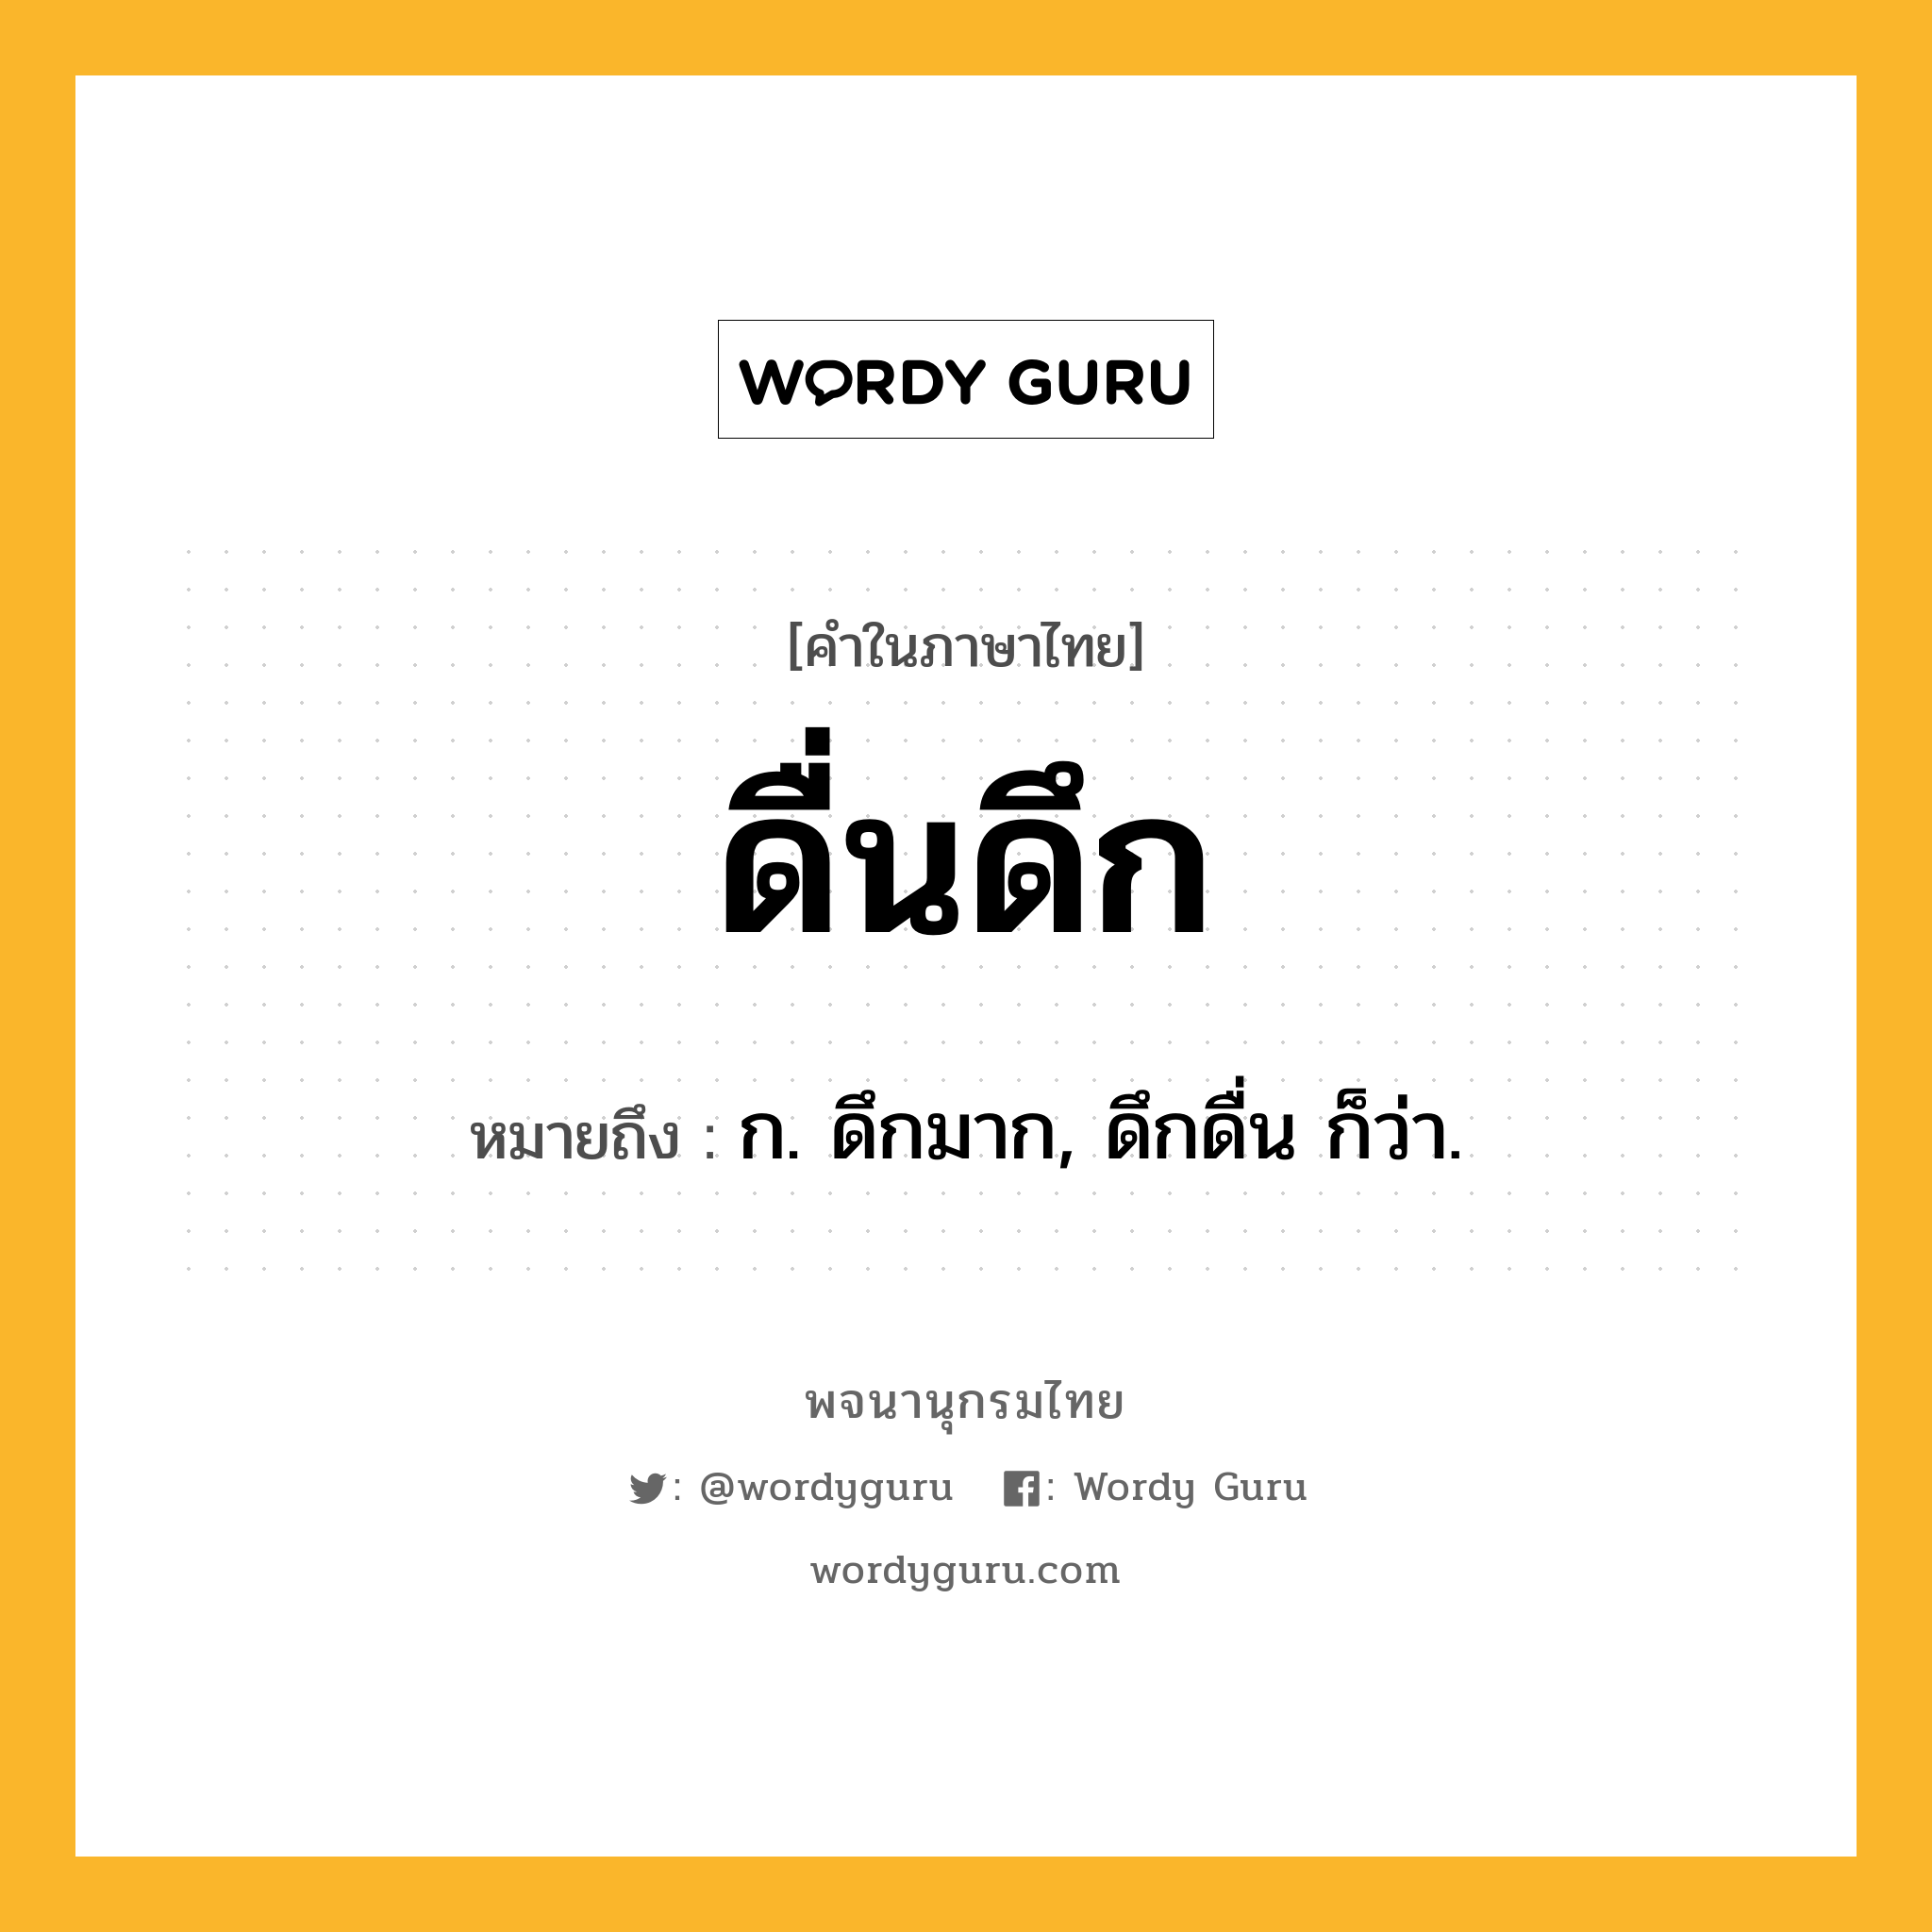 ดื่นดึก ความหมาย หมายถึงอะไร?, คำในภาษาไทย ดื่นดึก หมายถึง ก. ดึกมาก, ดึกดื่น ก็ว่า.